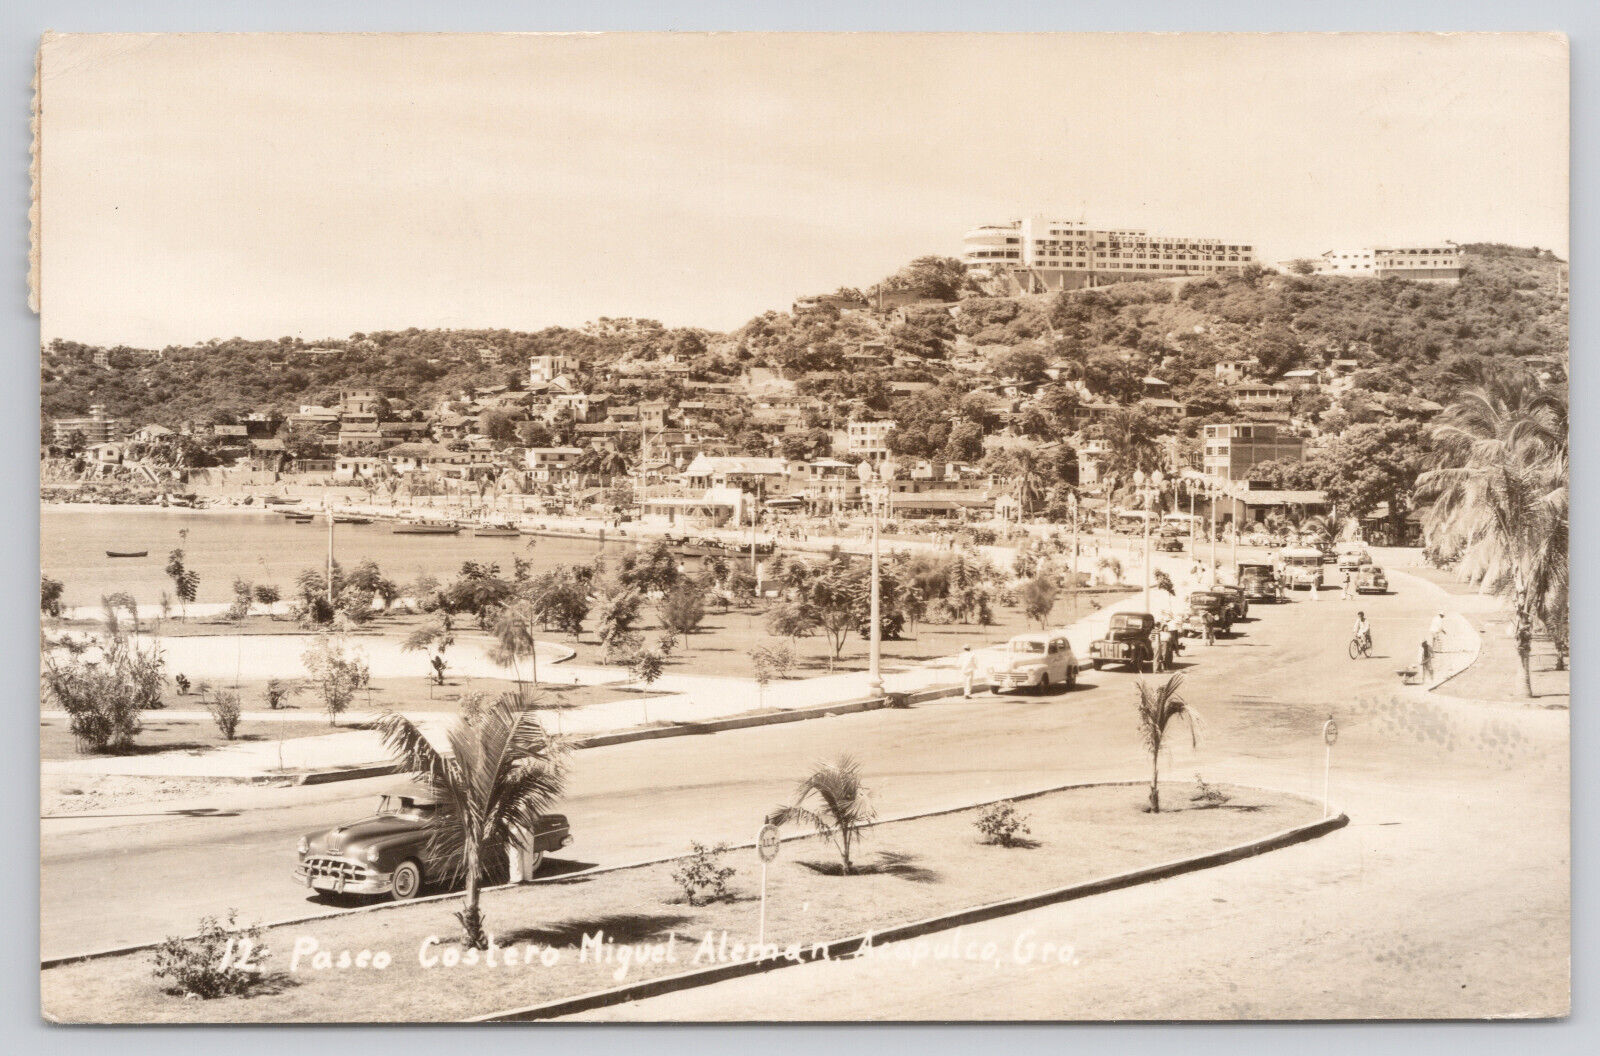 Acapulco Mexico Avenida Costera Miguel Alemán RPPC Real Photo Postcard 1930